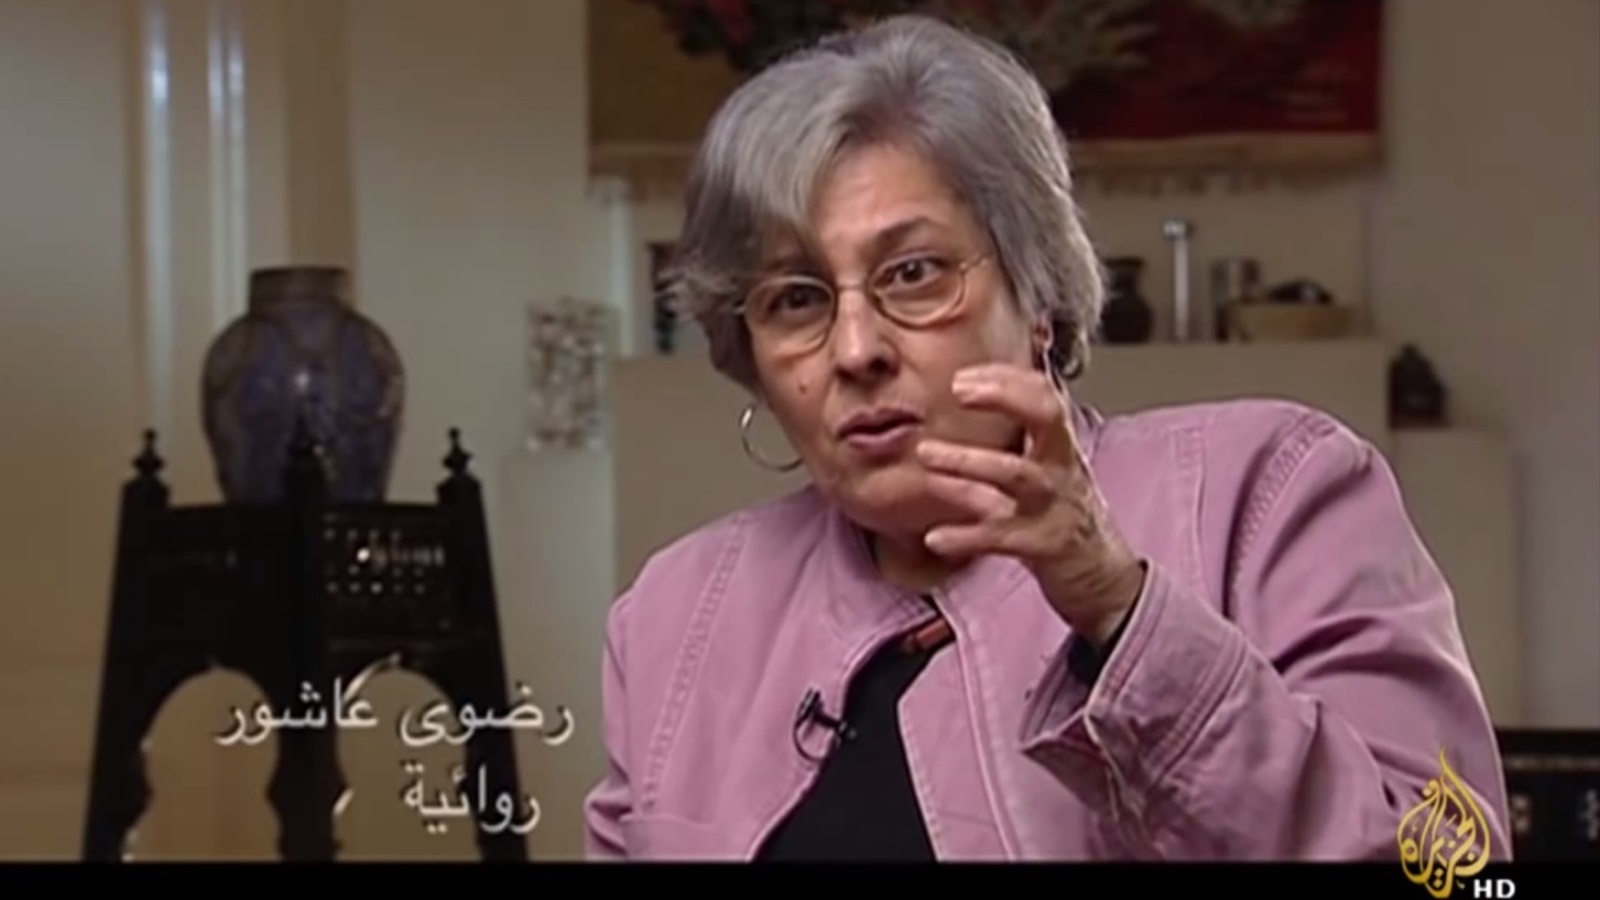  رضوى عاشور؛ روائية وناقدة أدبية، زوجة الأديب مريد البرغوثي ووالدة الشاعر تميم البرغوثي (1946-2014م)  (الجزيرة)